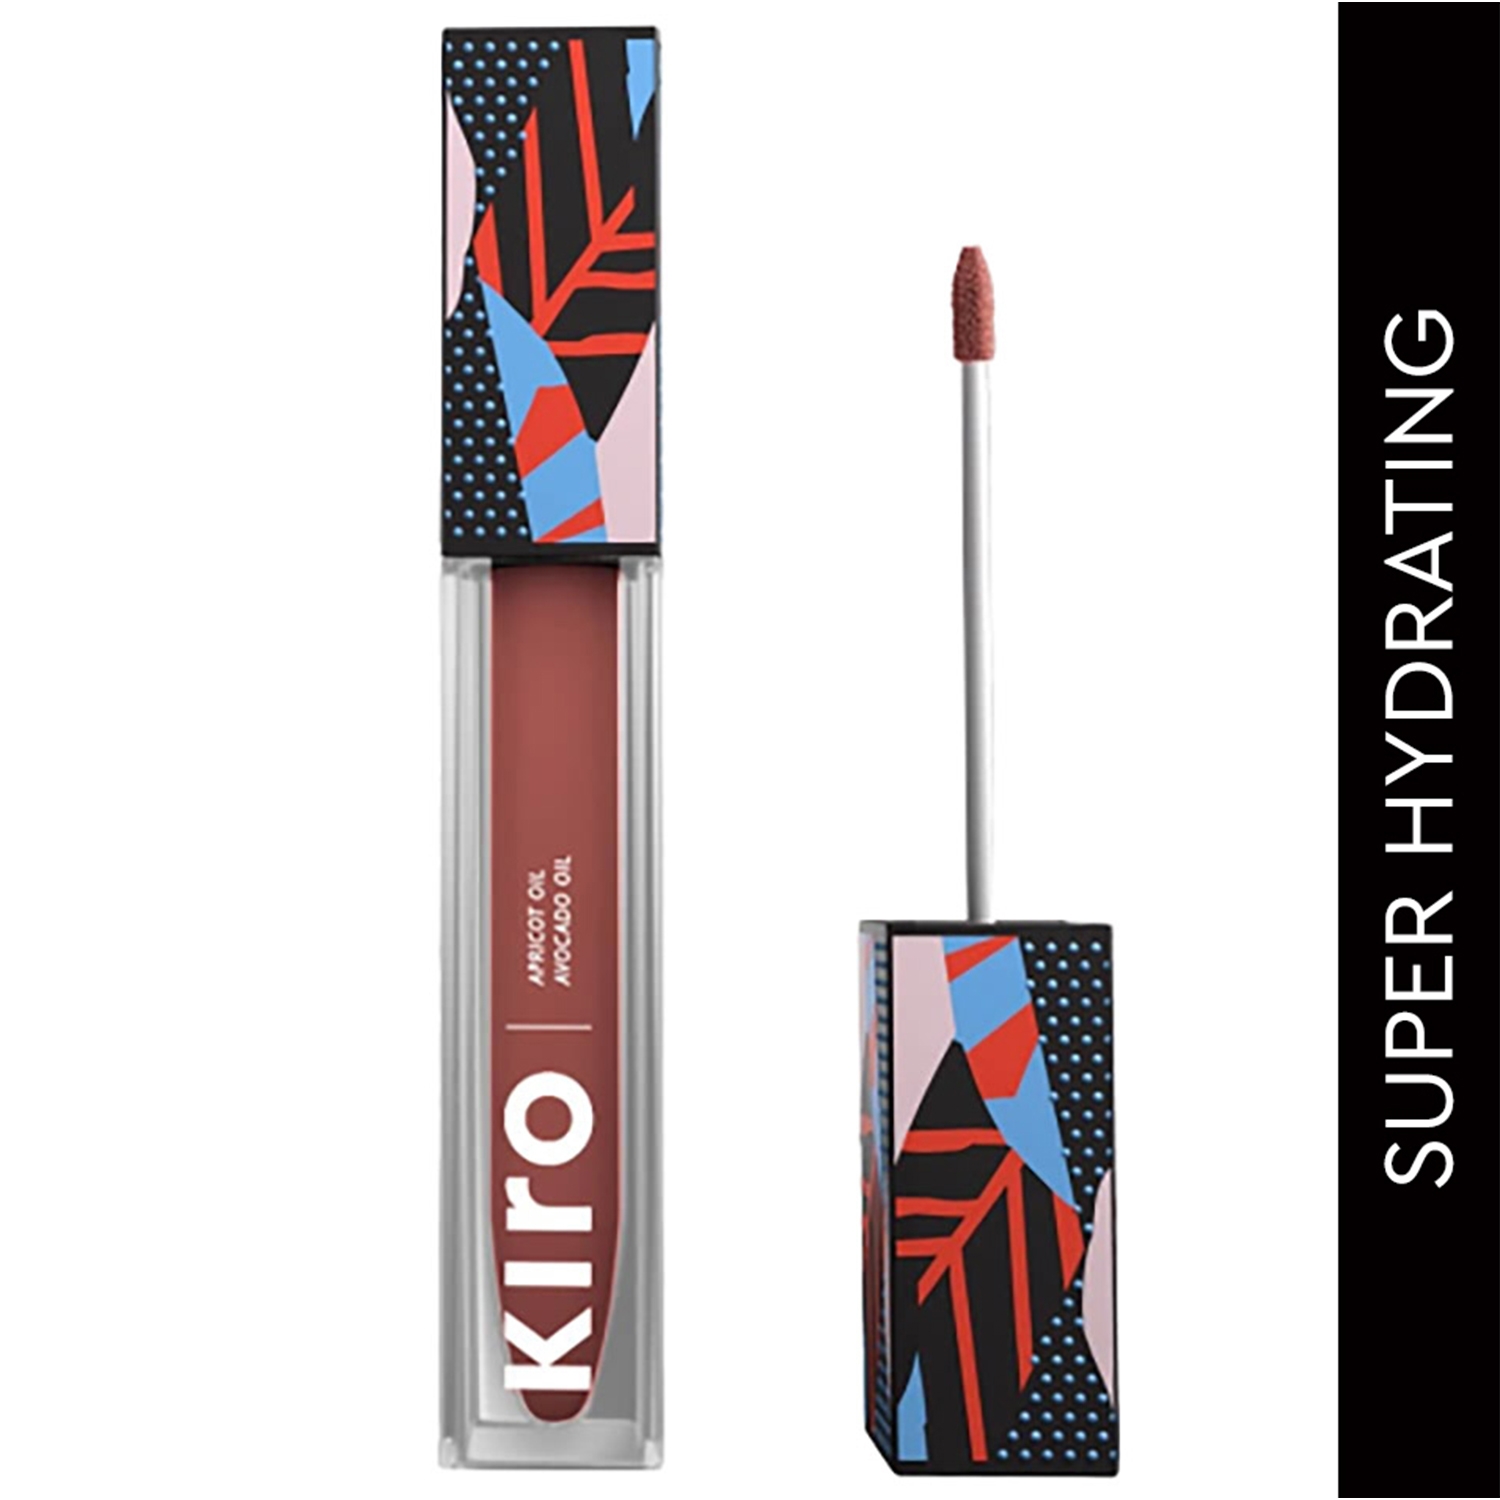 KIRO Non-stop Airy Matte Liquid Lip - Cinnamon Nude 17 (5ml)